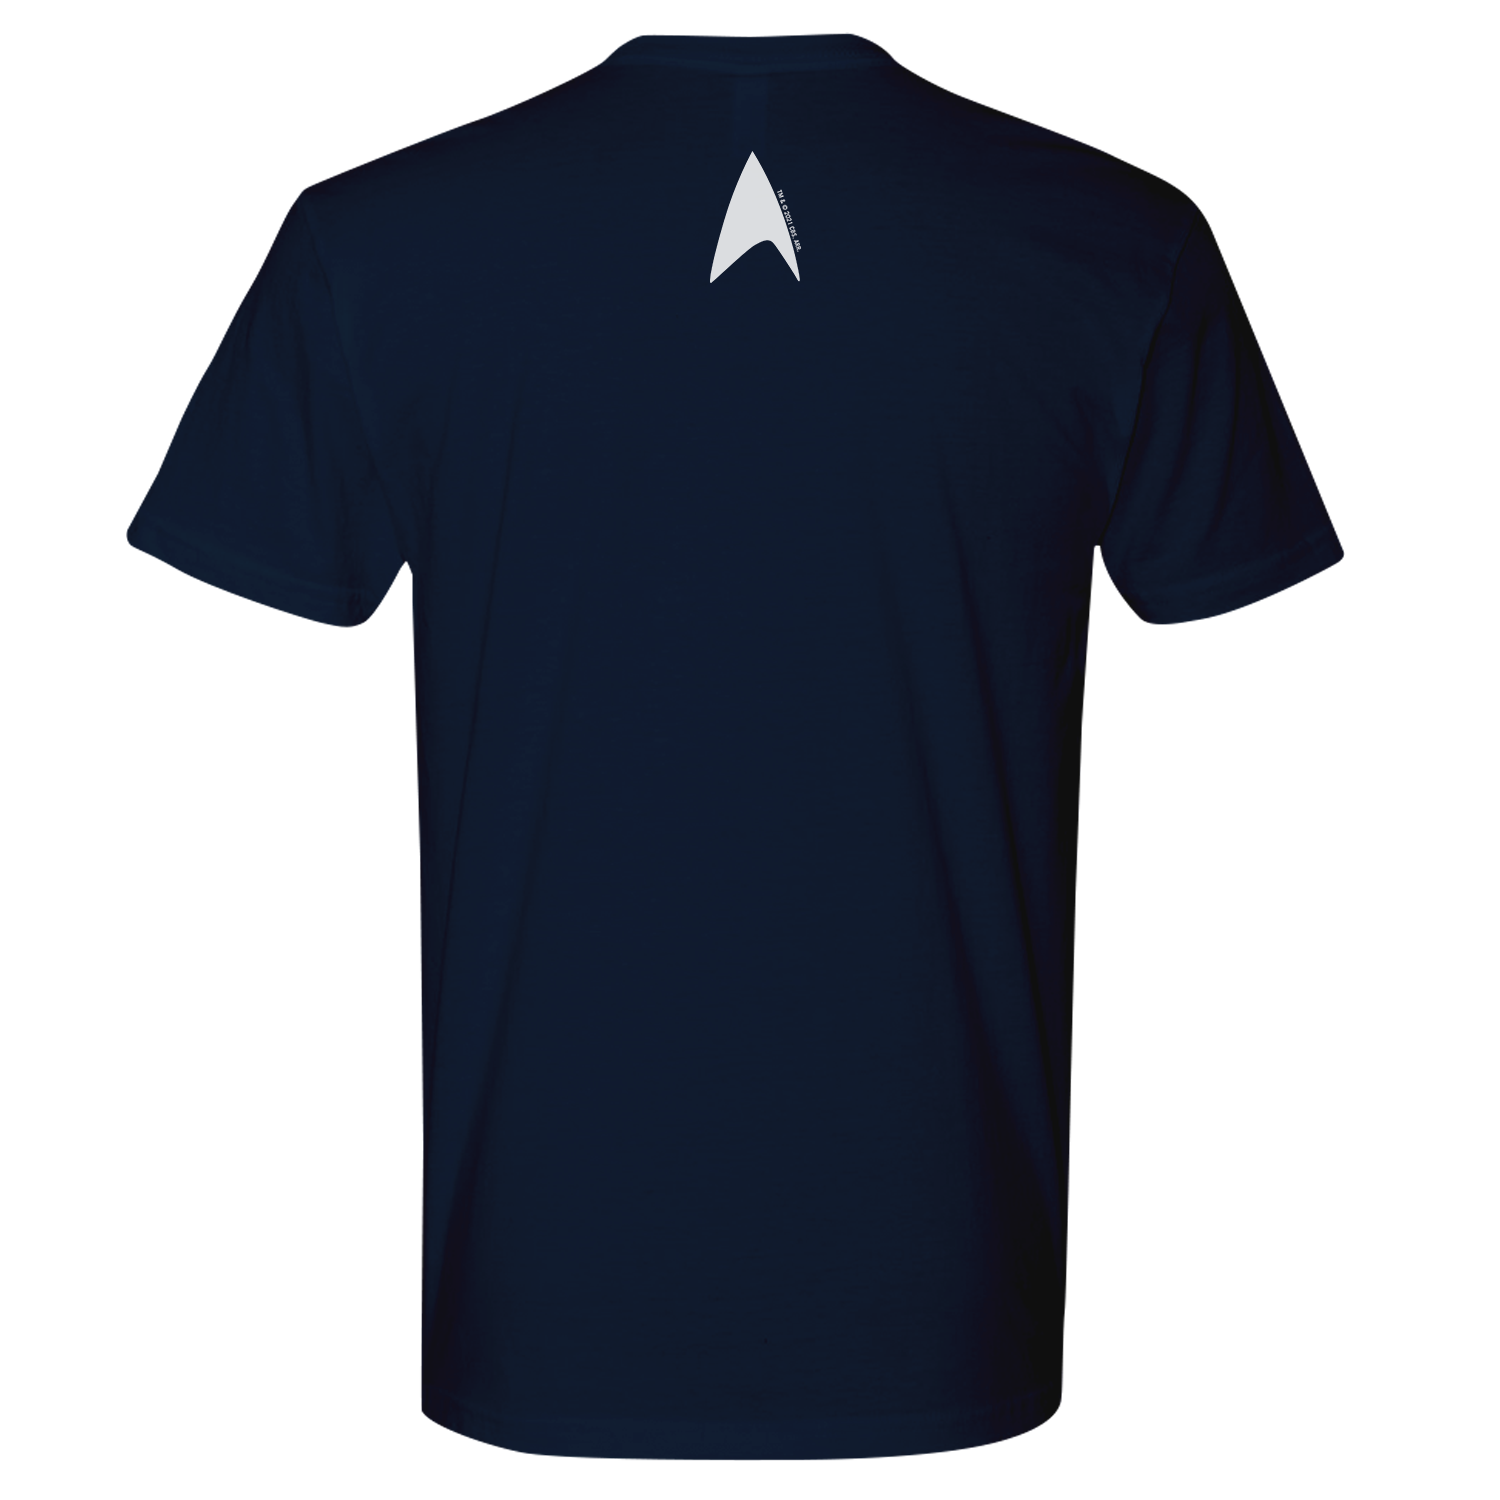 Star Trek: Lower Decks RITOS Adult Short Sleeve T-Shirt